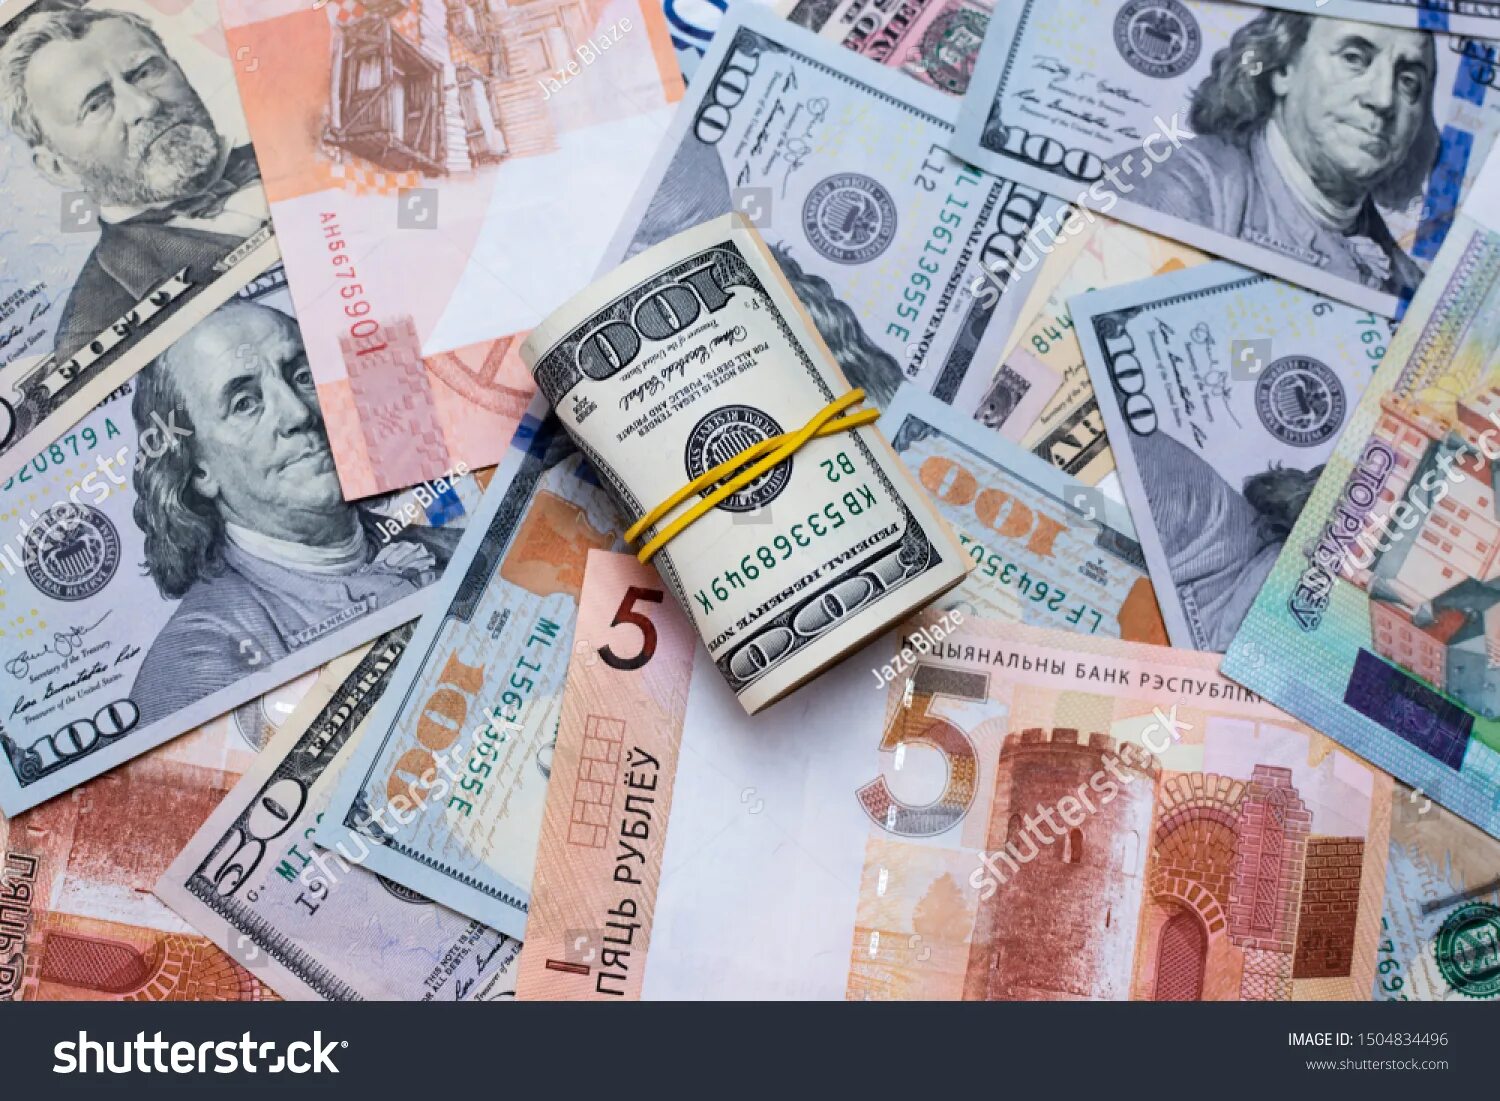 Иностранная валюта картинки. Доллар евро рубл. Dollars to Euros. Соответствующая иностранная валюта